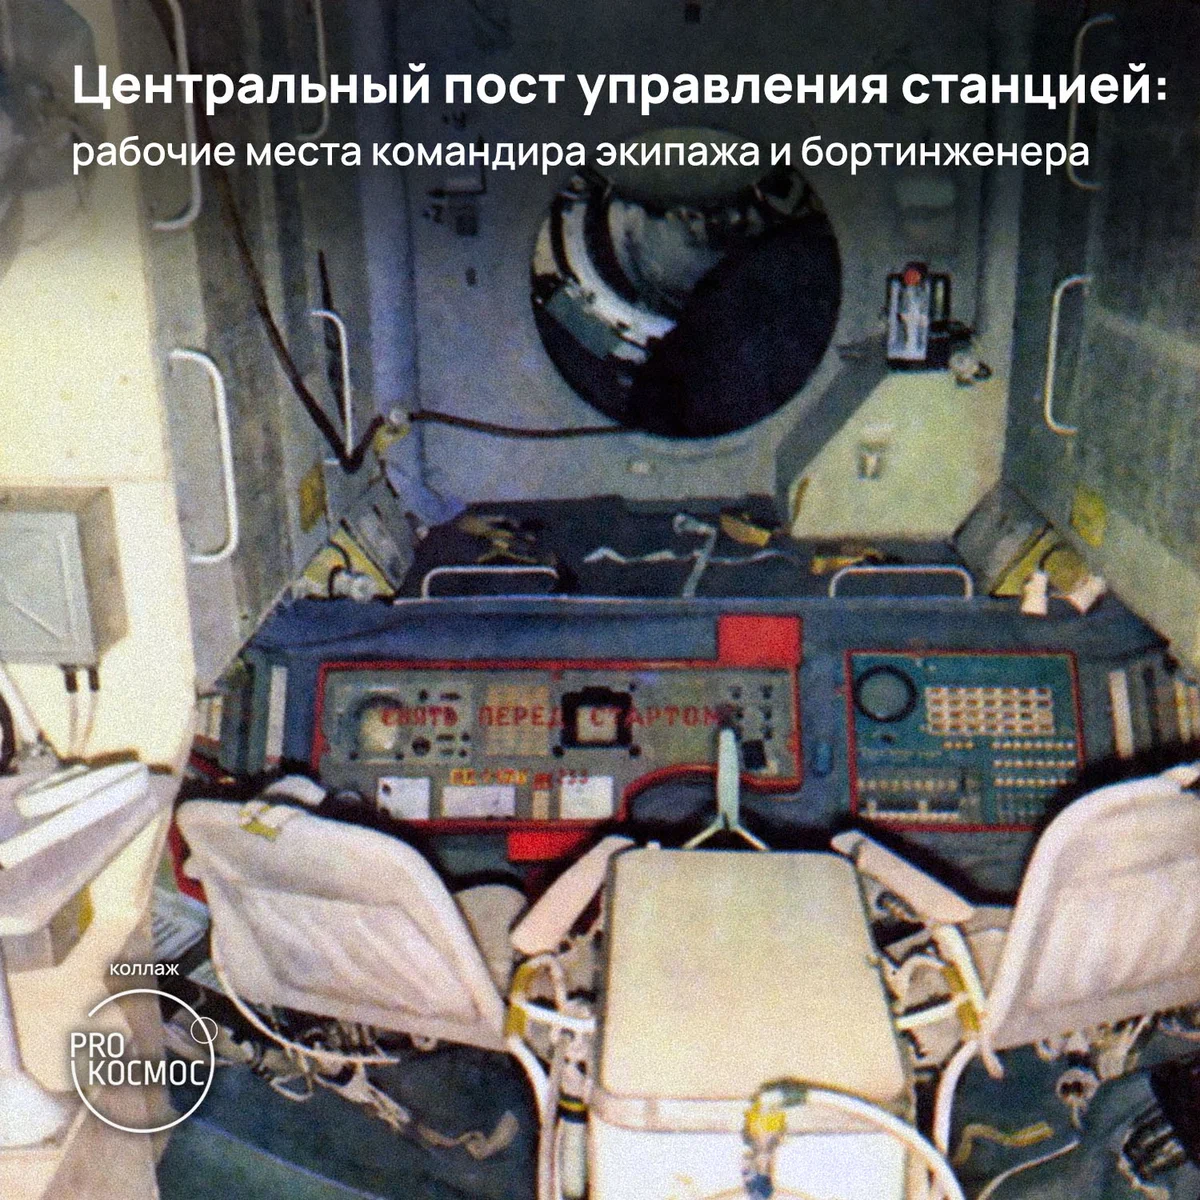 Триумф и трагедия «Салюта»: космонавты доказали — жить и работать в космосе можно, но подвела техника⁠⁠ height=1200px width=1200px